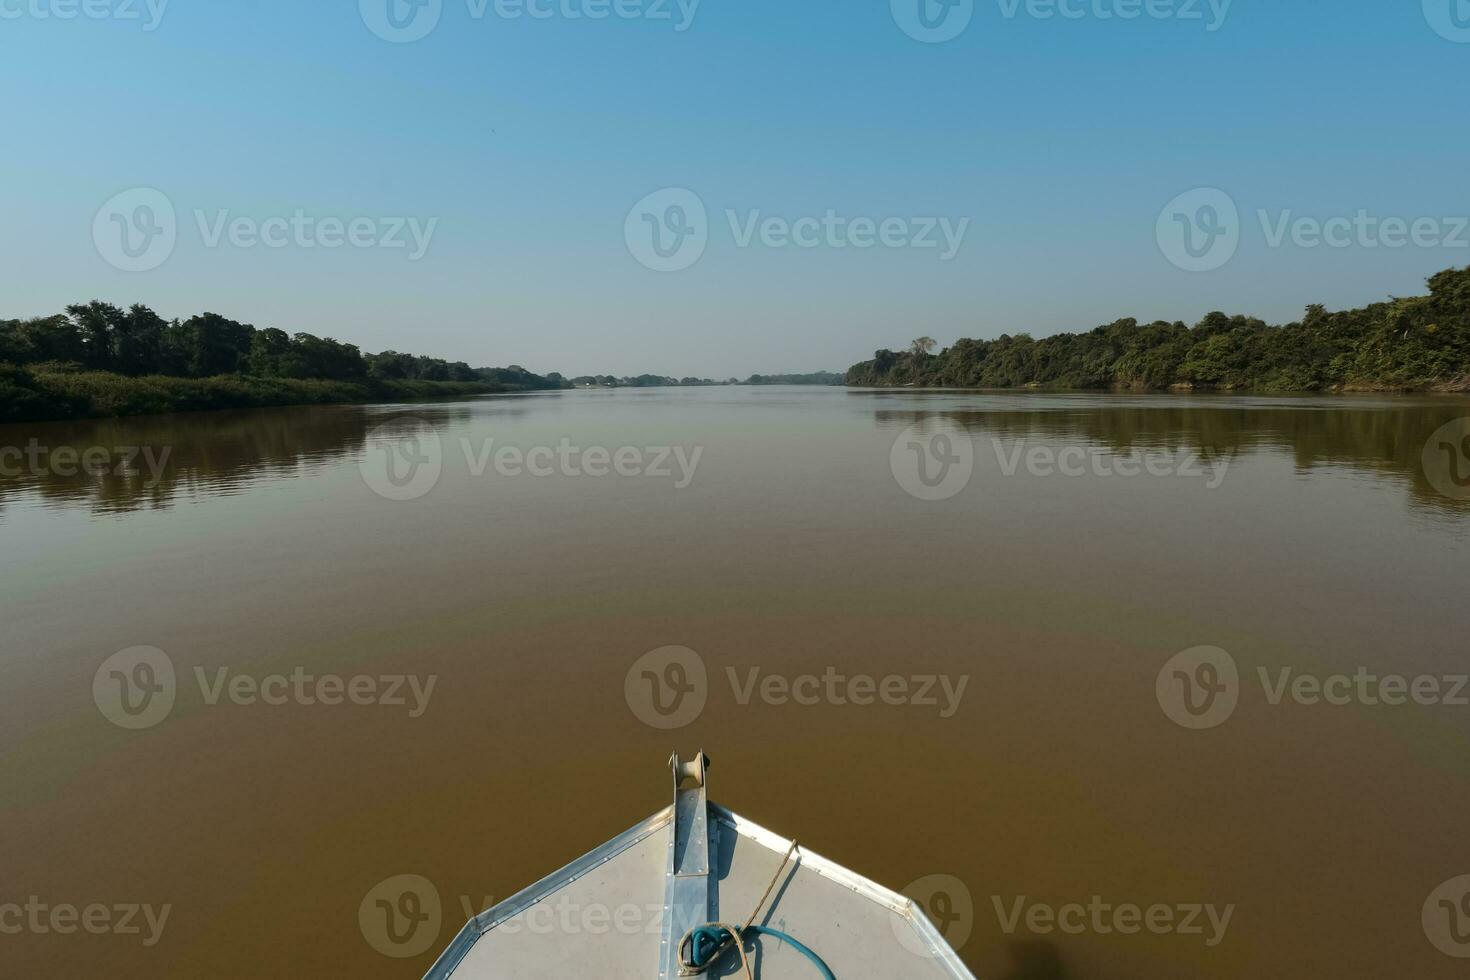 rivier- landschap en oerwoud, pantanal, Brazilië foto